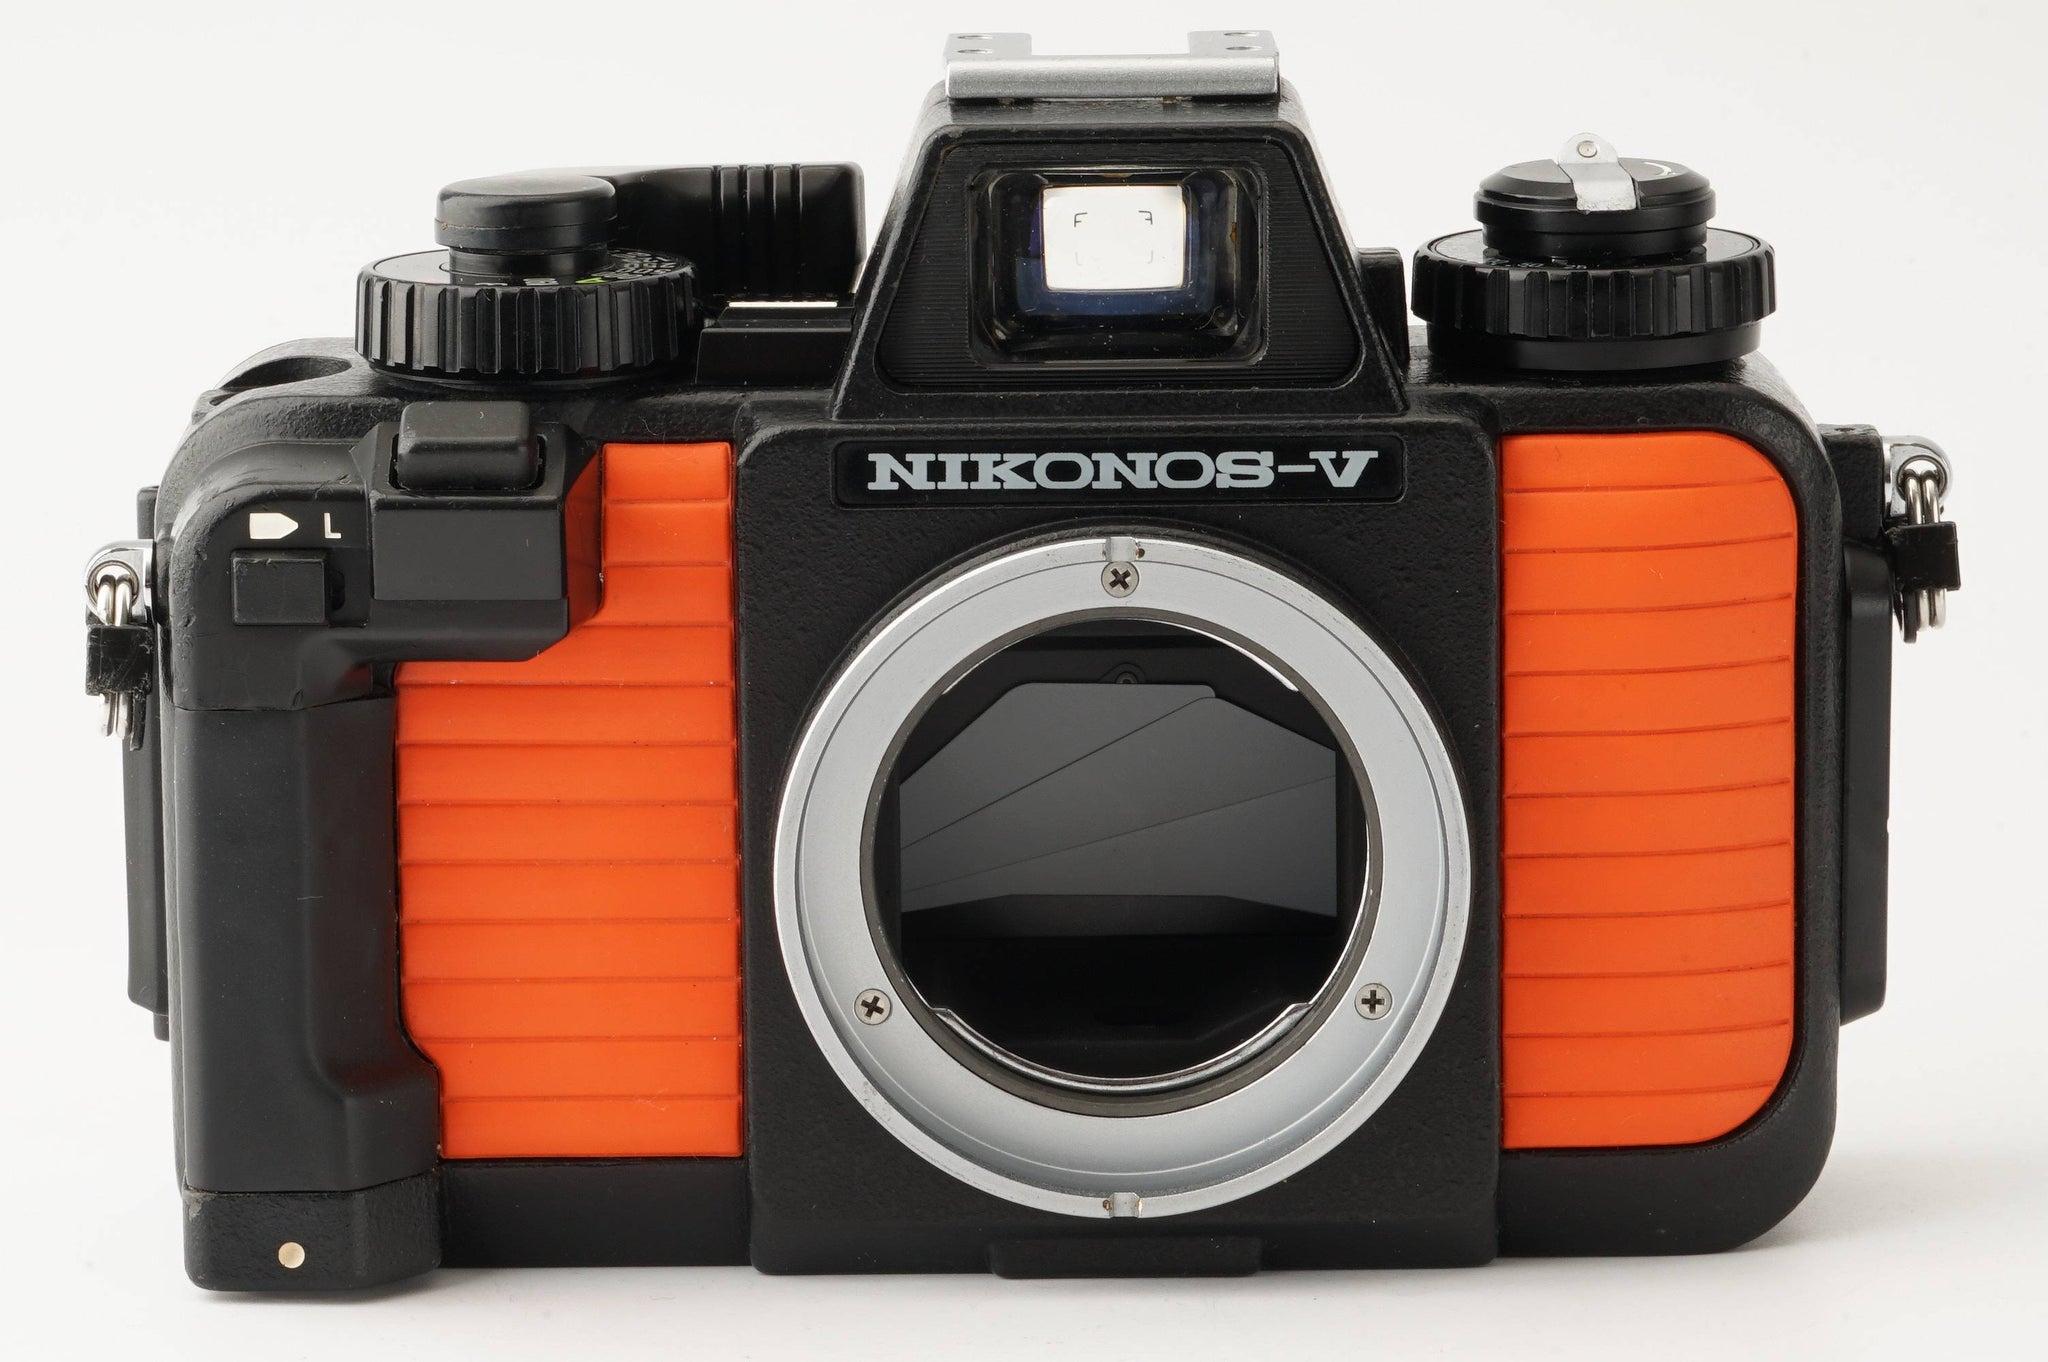 ニコン Nikon NIKONOS V オレンジ / UW-NIKKOR 28mm F3.5 – Natural ...